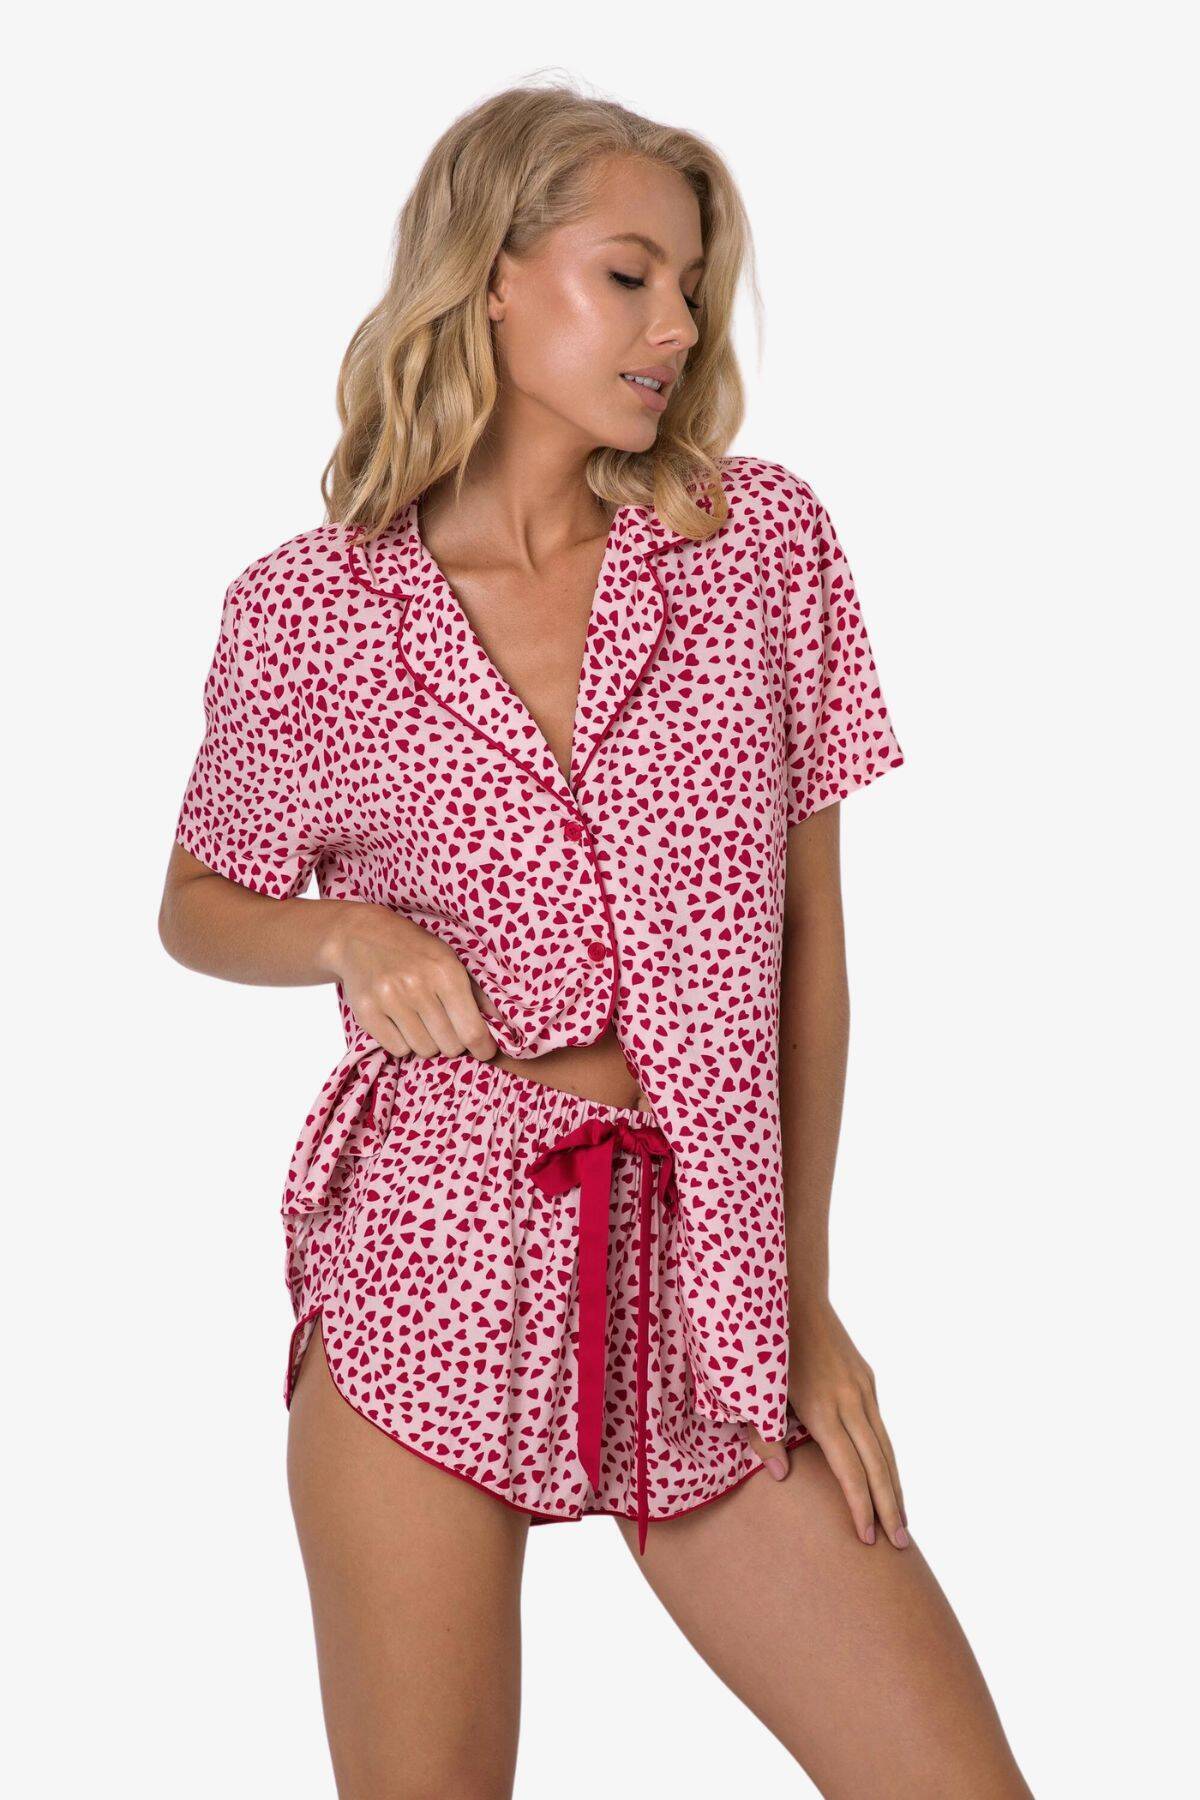 Пижама женская с шортами ARUELLE Erica pajama short, малиновый вид 0